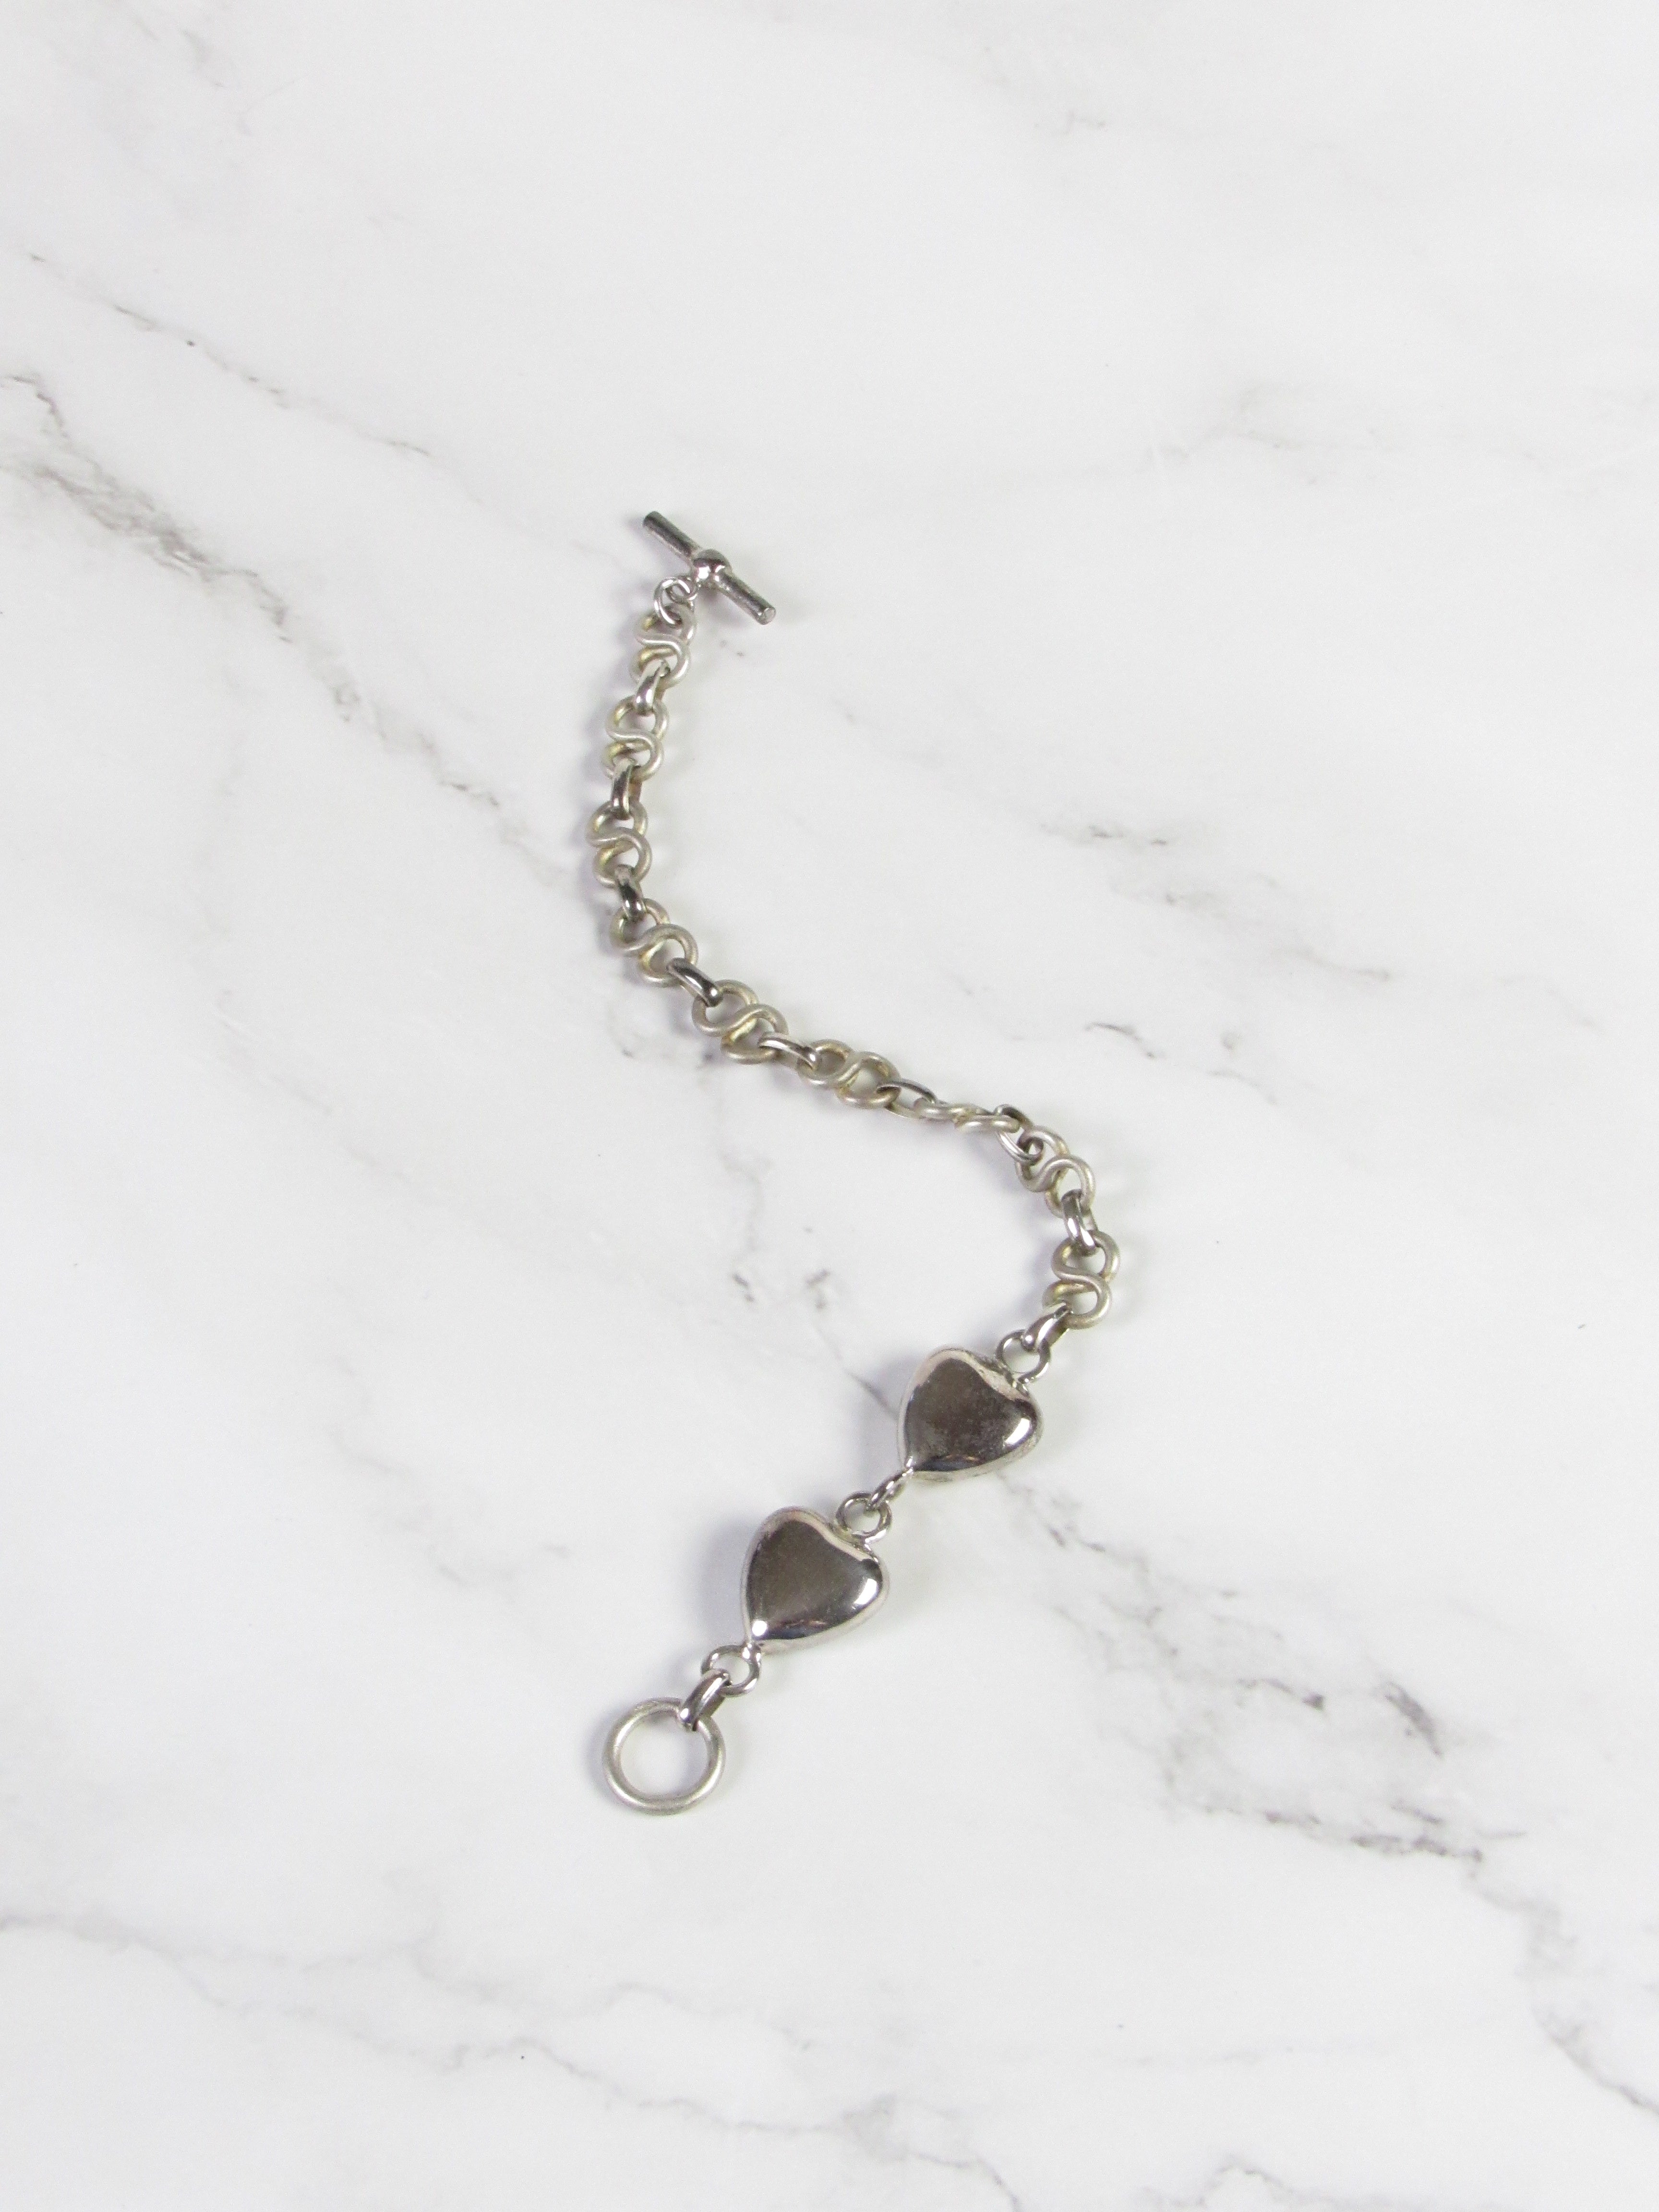 Vintage Hearts Linked Silver Charm Bracelet